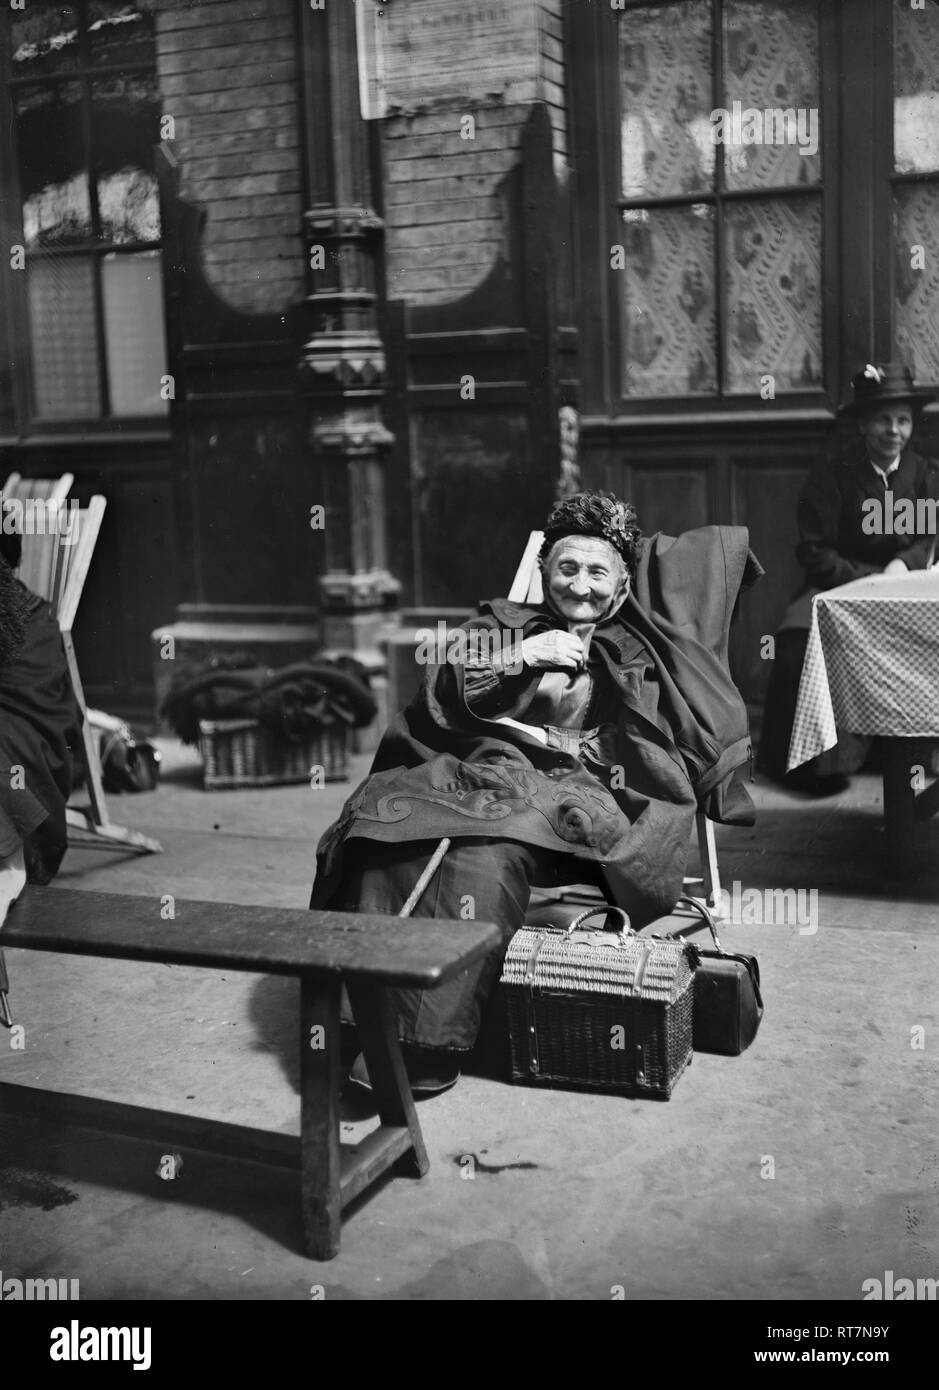 Ein Flüchtling aus der Vorderseite des Deutschen Invasoren angetrieben wird gerne Ruhe und Hilfe am Gare de Lyon, Paris, Kantine gefunden zu haben, unterstützt durch das Amerikanische Rote Kreuz. Juni 1918. Stockfoto